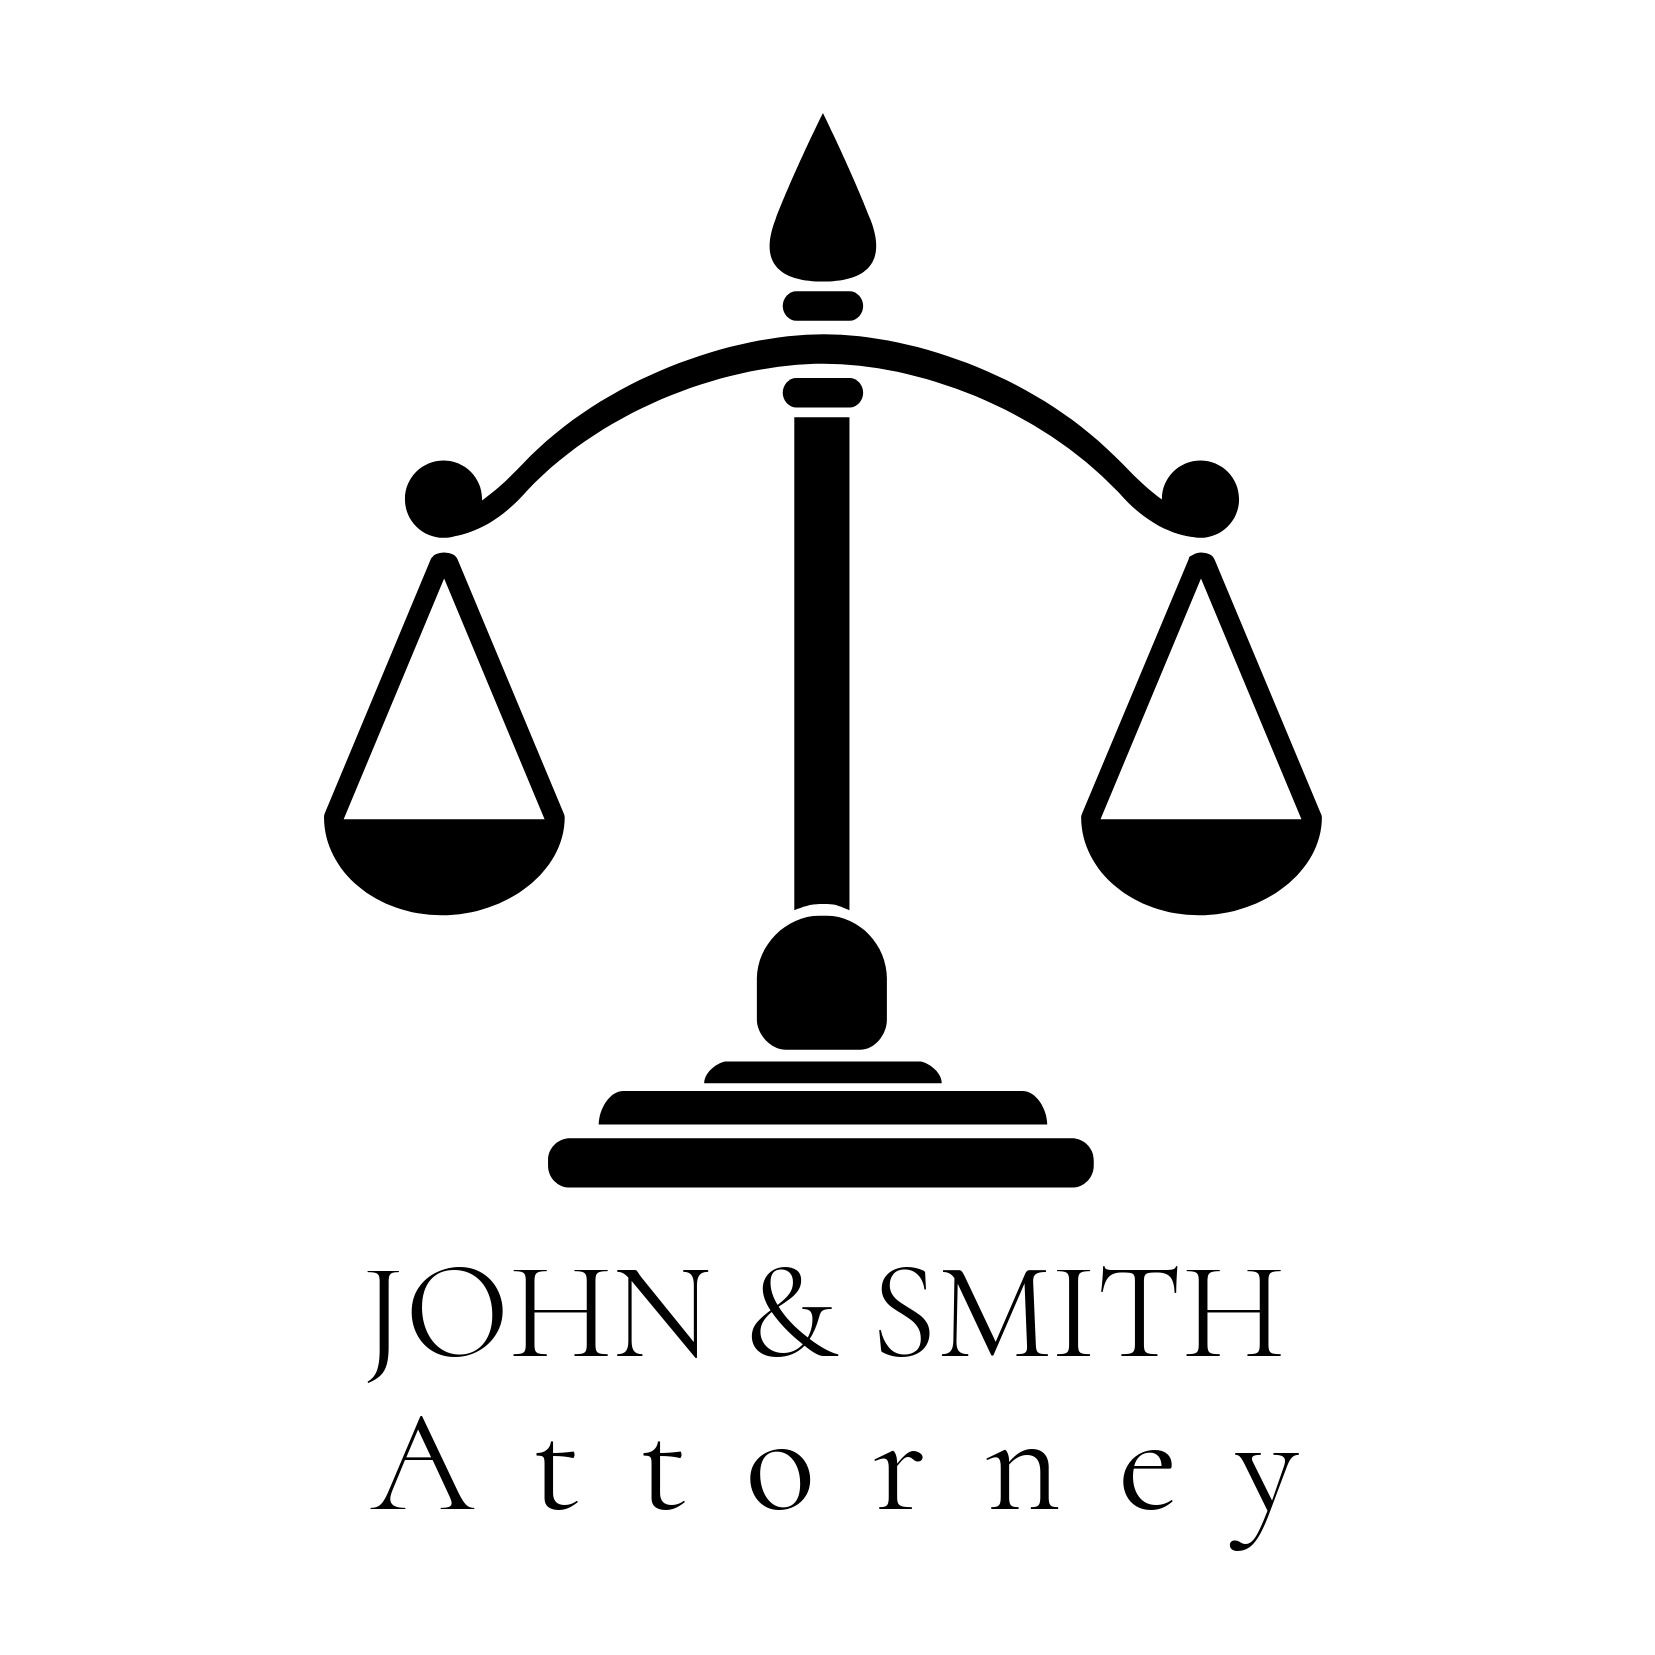 Kreative Logo-Designs für Anwälte